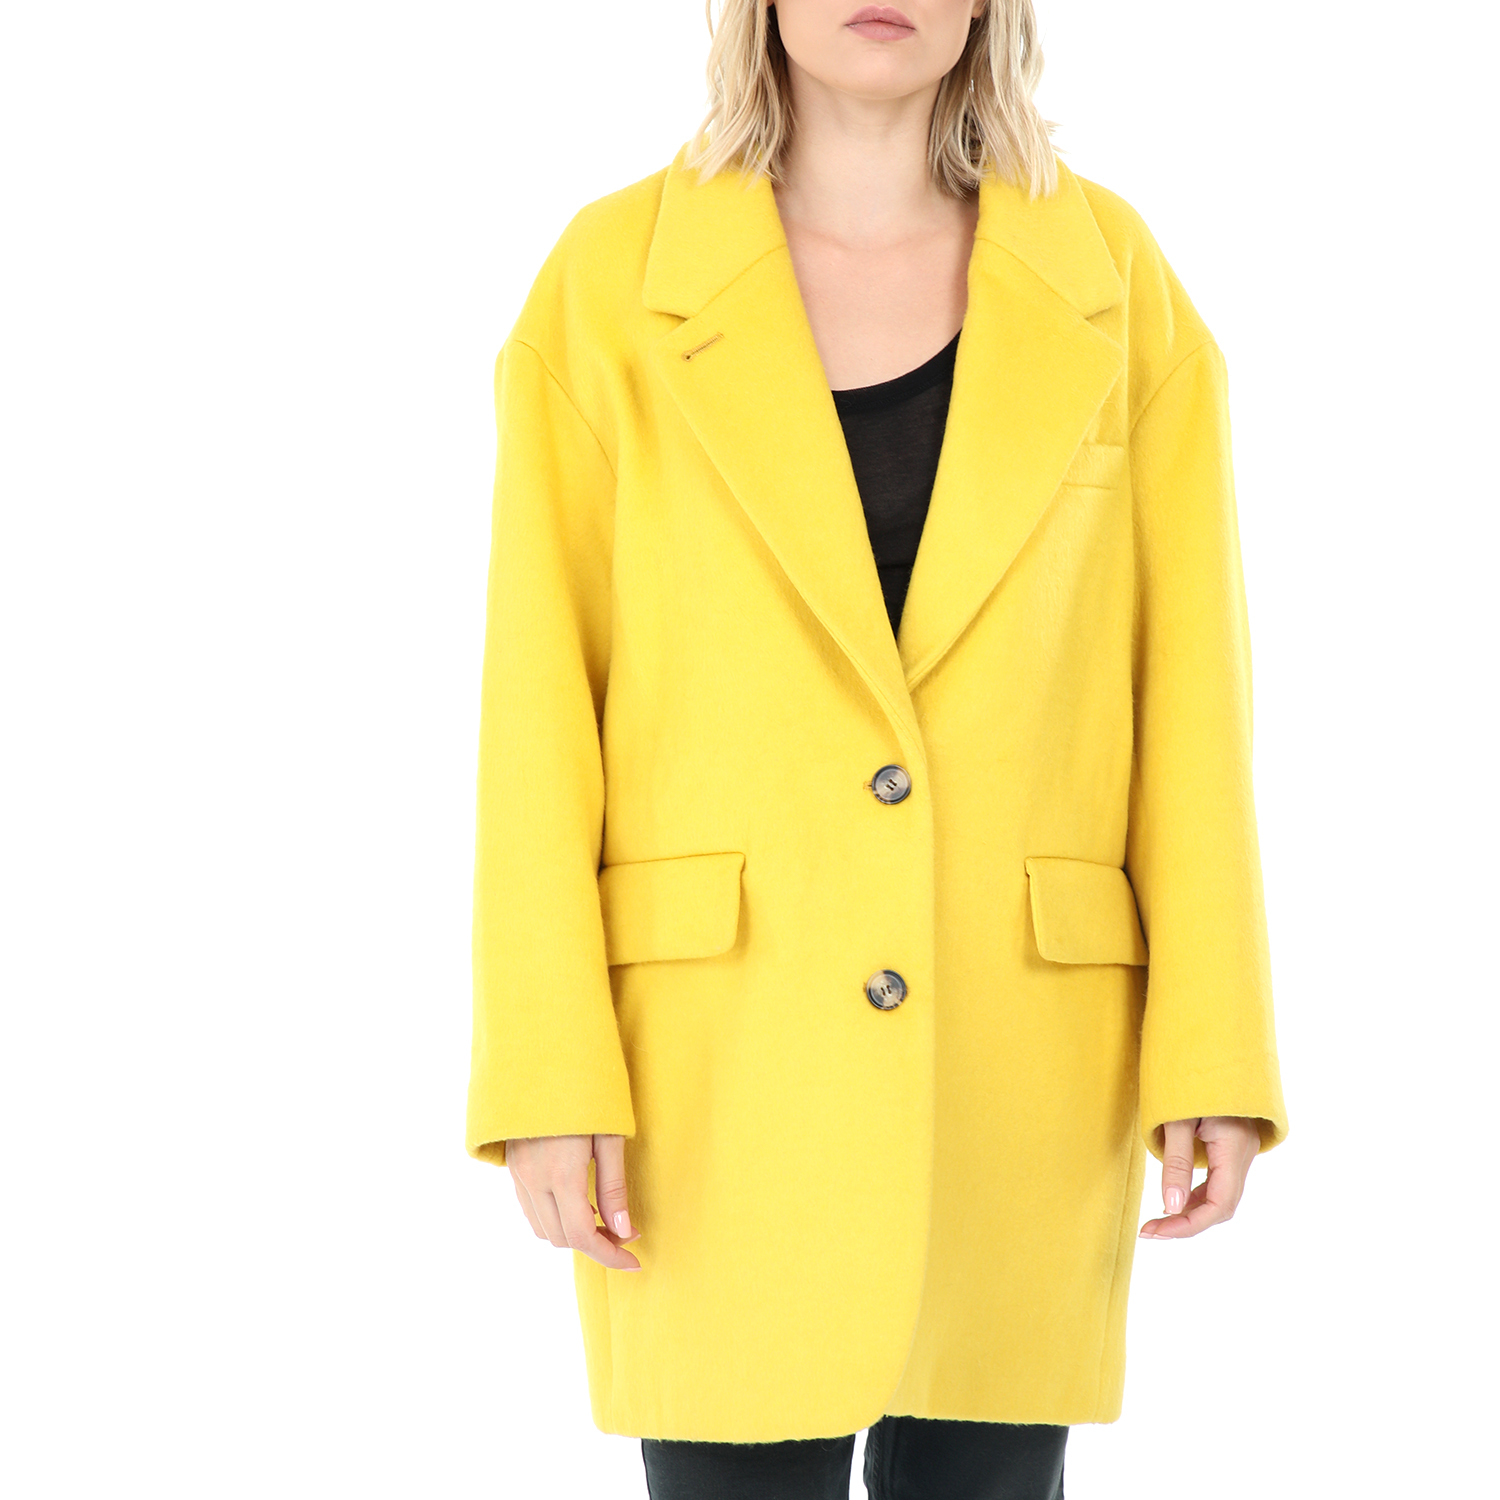 Γυναικεία/Ρούχα/Πανωφόρια/Παλτό AMERICAN VINTAGE - Γυναικείο παλτό AMERICAN VINTAGE κίτρινο